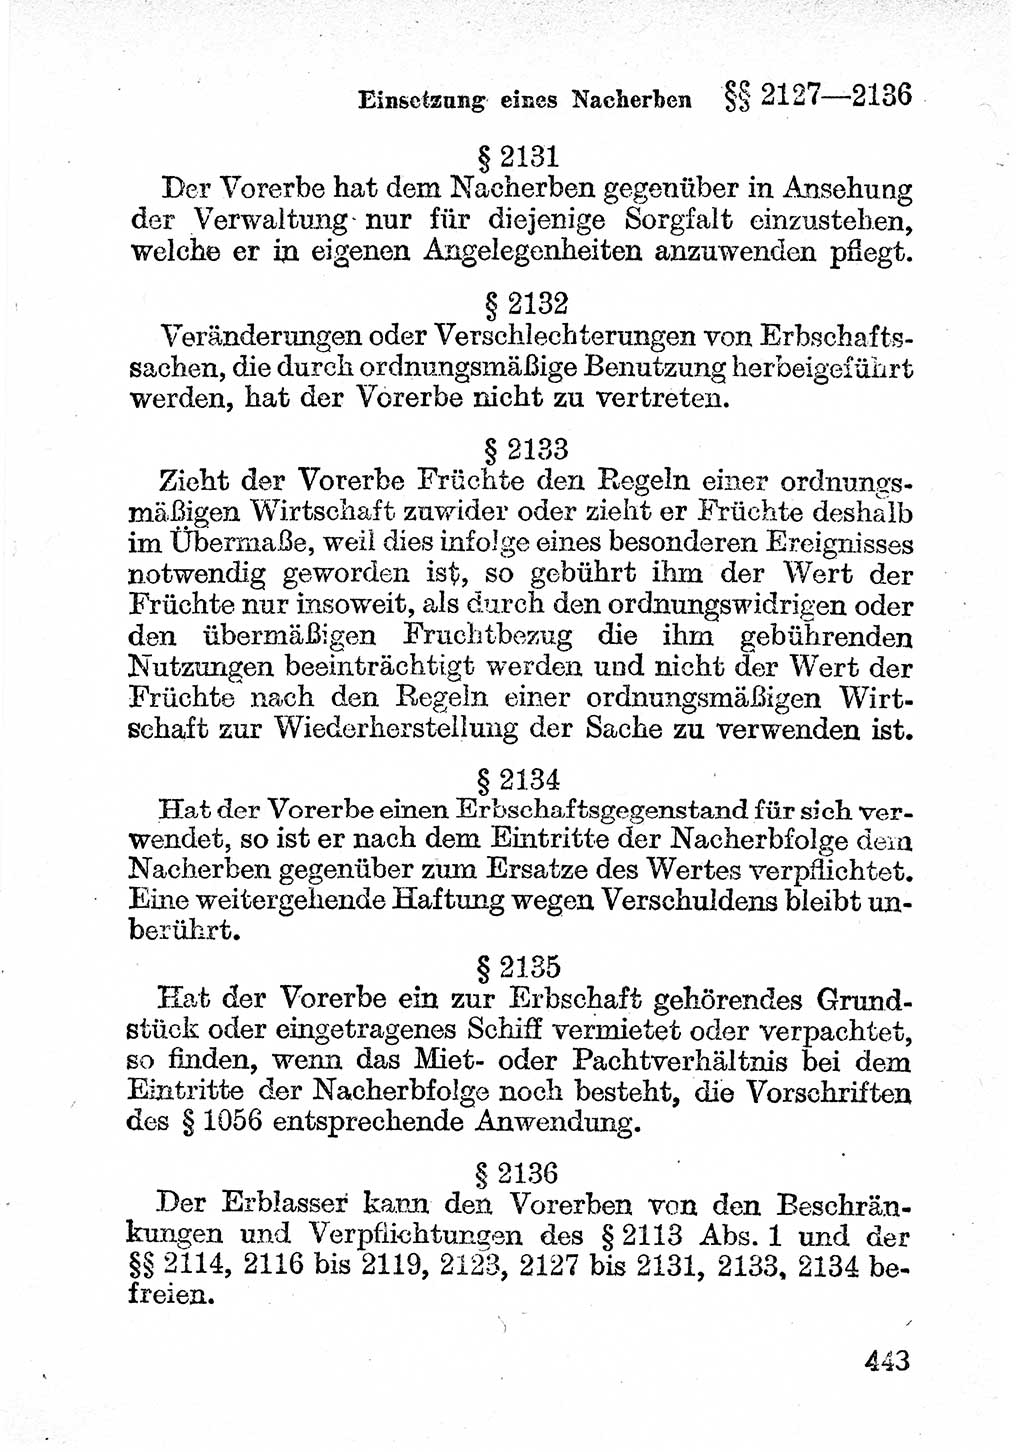 Bürgerliches Gesetzbuch (BGB) nebst wichtigen Nebengesetzen [Deutsche Demokratische Republik (DDR)] 1956, Seite 443 (BGB Nebenges. DDR 1956, S. 443)